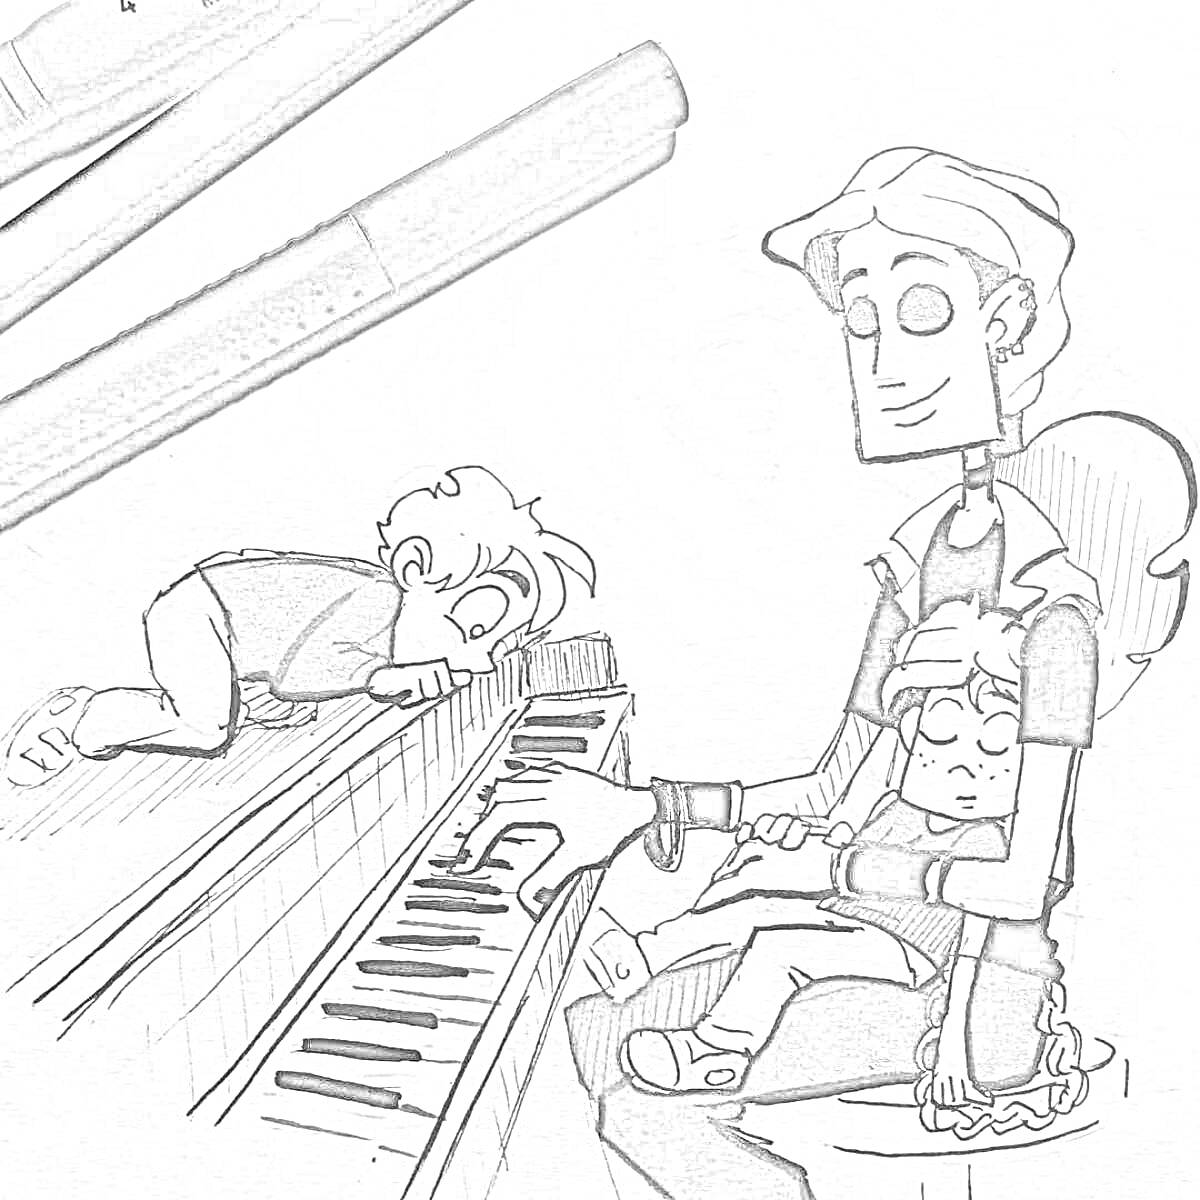 Раскраска с тремя персонажами из «Метал Фэмили», один из которых сидит на табурете, играет на пианино и держит одного из детей на коленях, второй ребенок лежит на пианино. На заднем плане лежат два маркера.